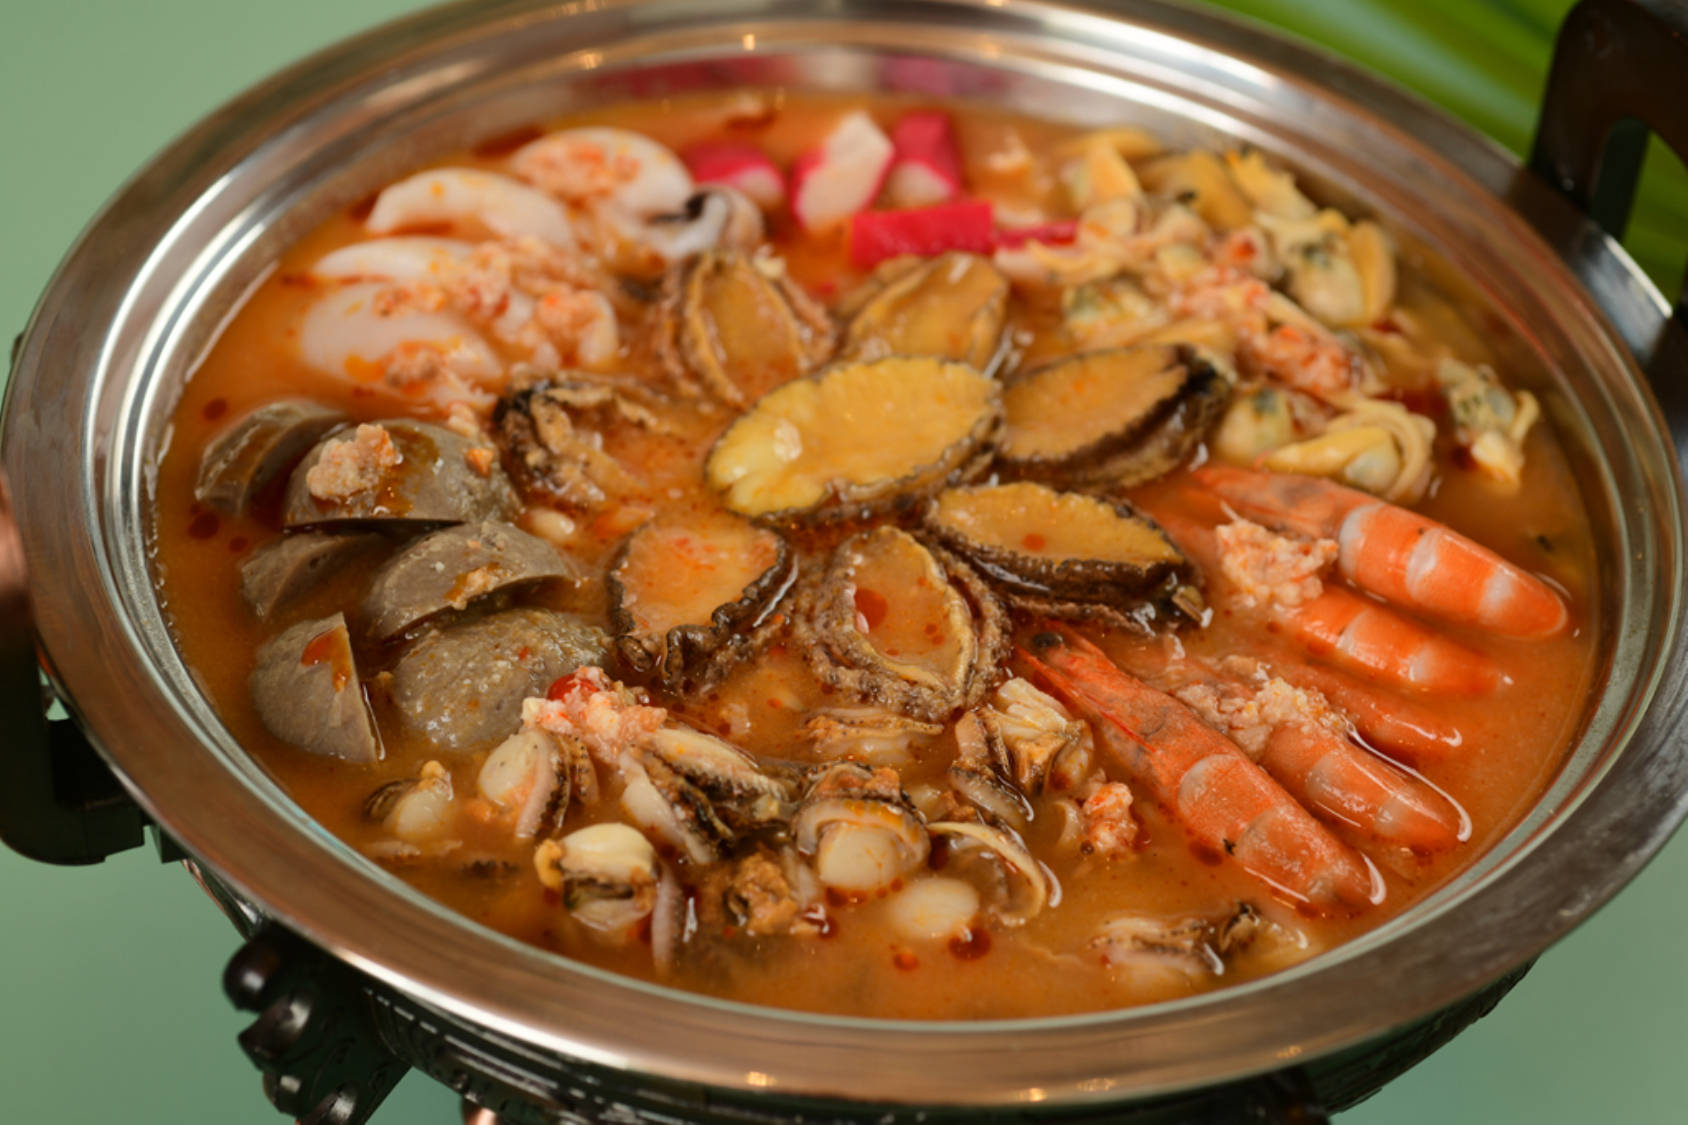 用热汤击退寒冷叭！豪华家庭版『韩式辣海鲜汤』是属于秋天的鲜味呀～ - 哔哩哔哩